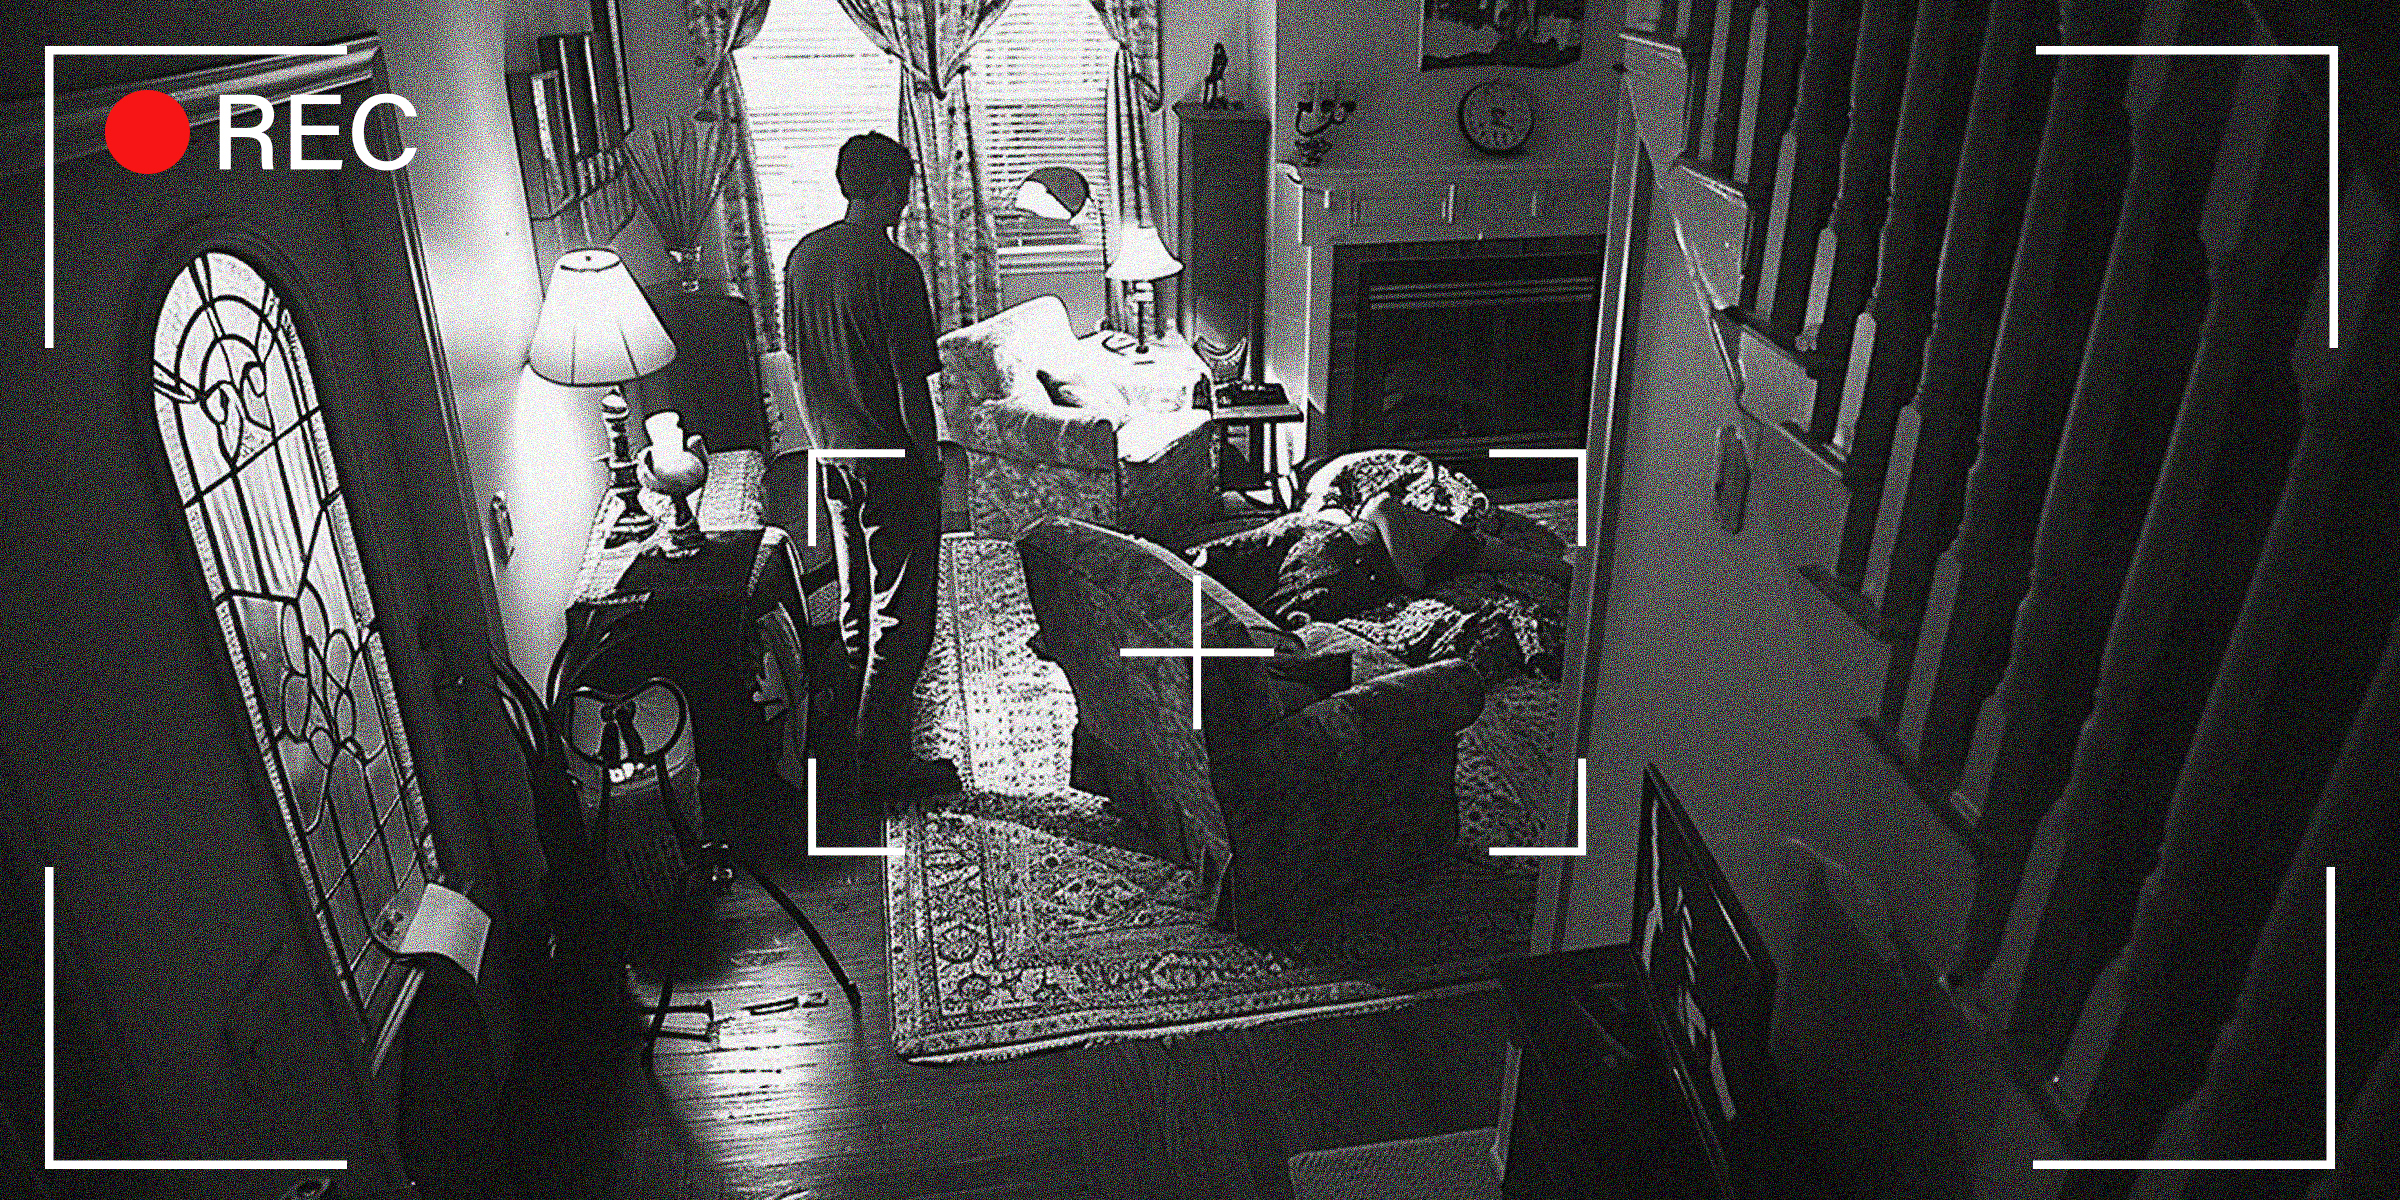 Les images de la caméra montrent un homme debout dans sa maison | Source : Midjourney